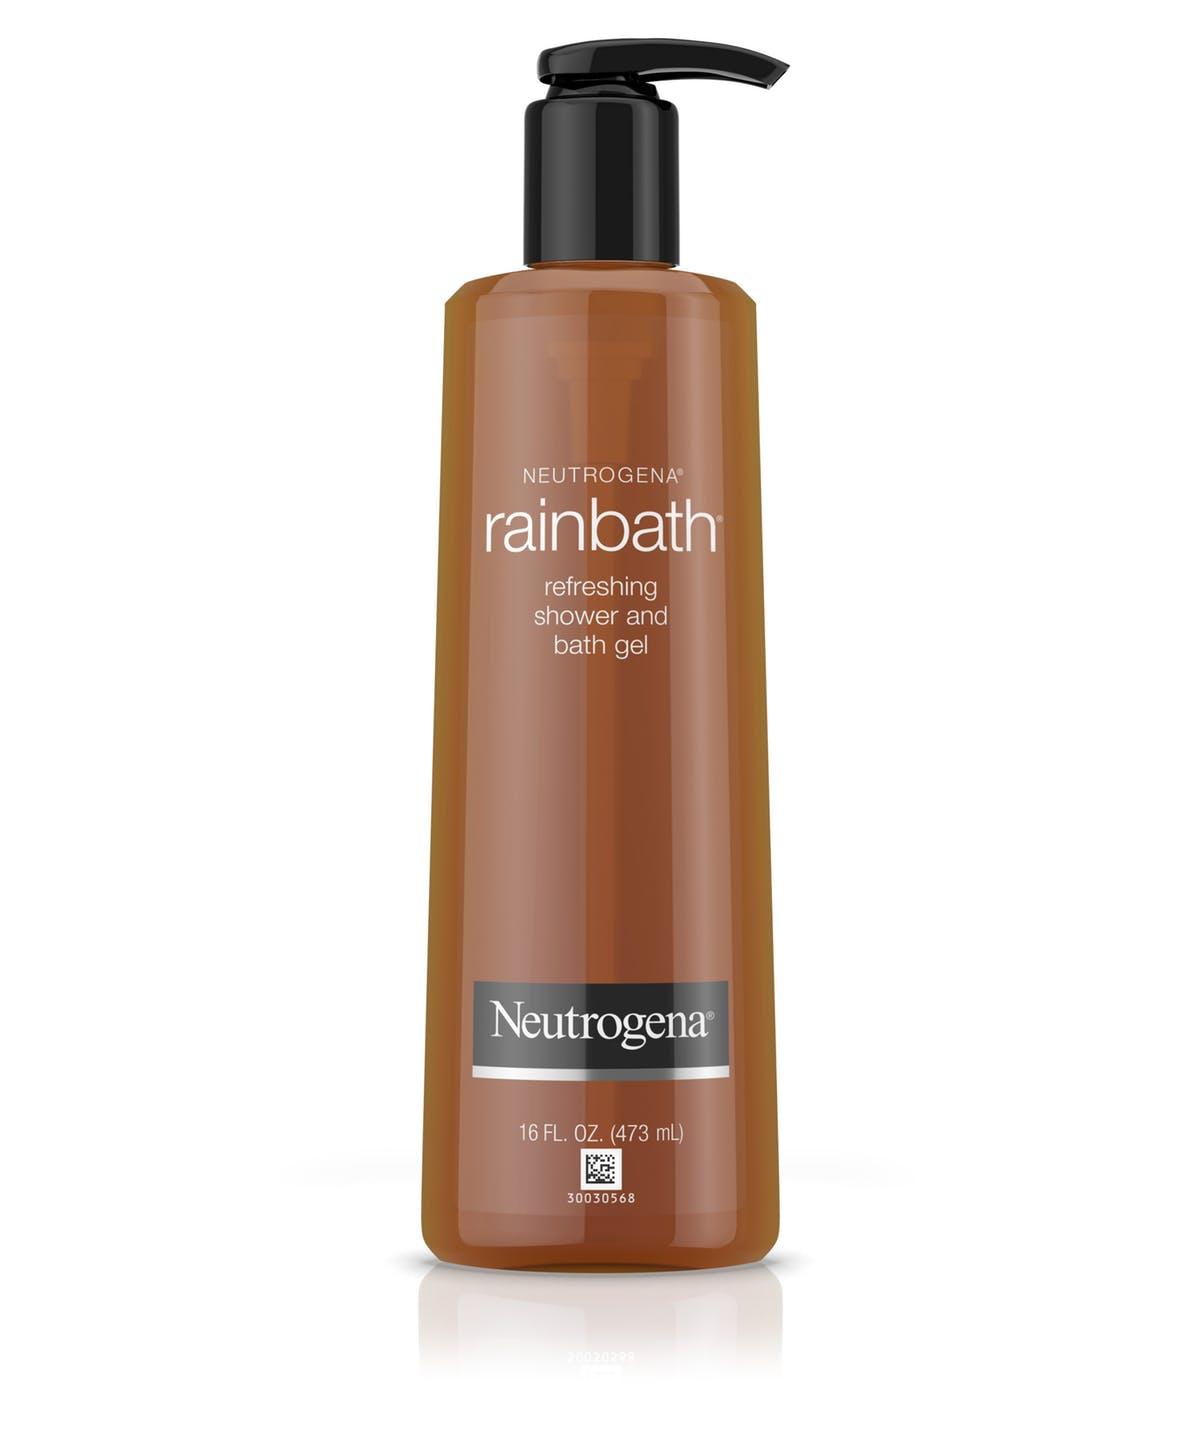 Neutrogena Rainbath Refreshing Shower and Bath Gel, Original 16 fl.oz